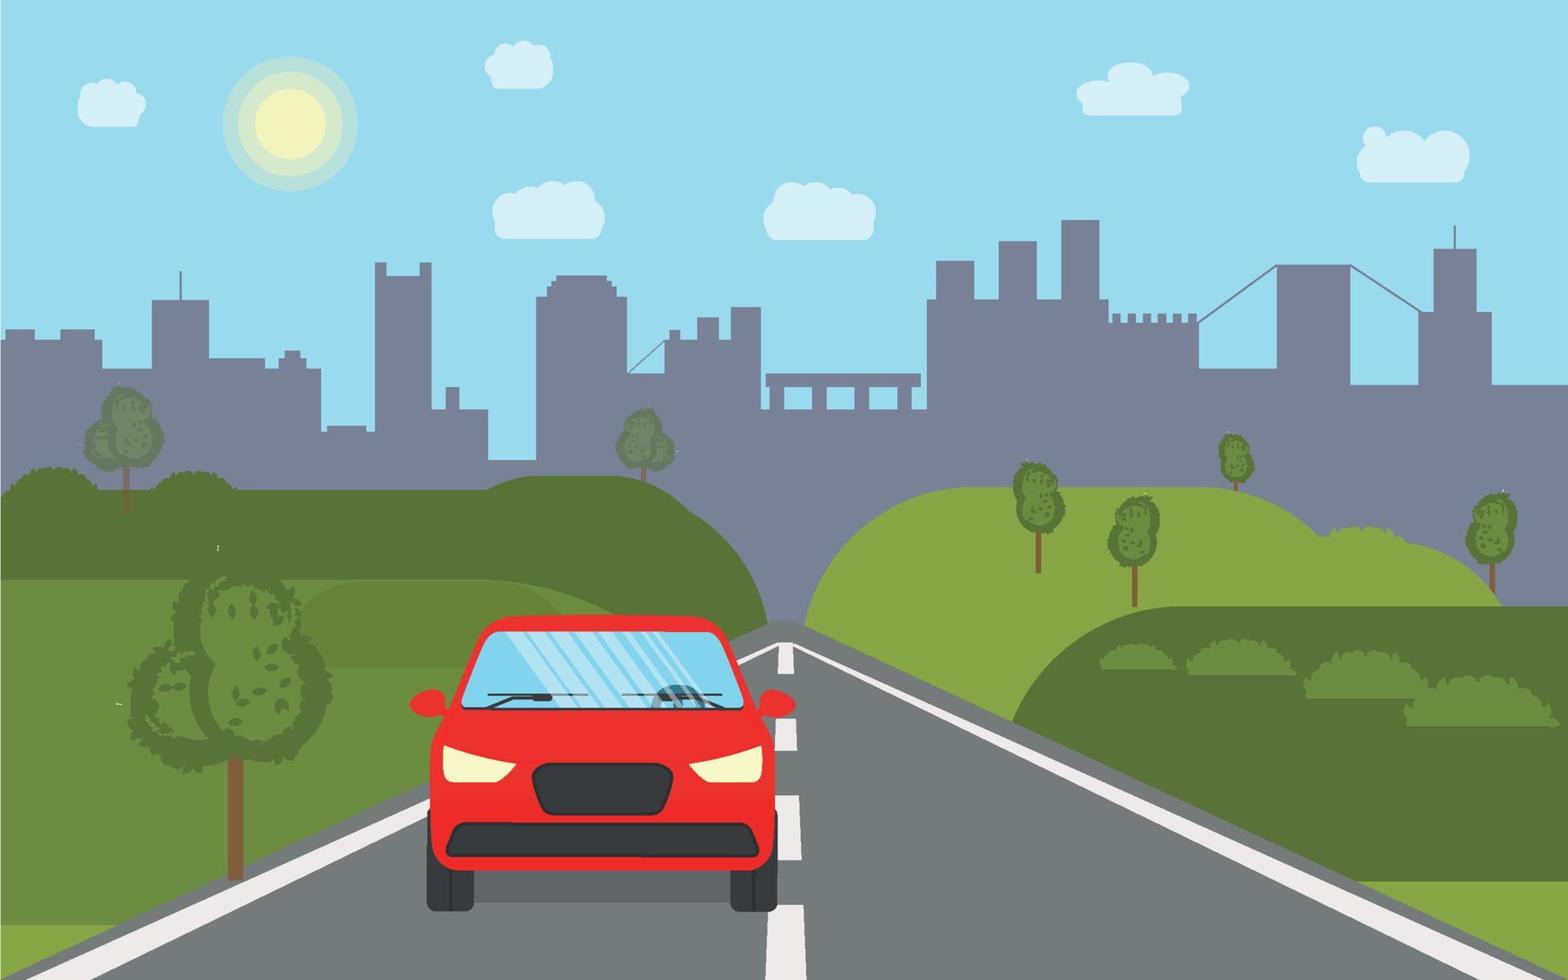 landskapsgata med en bil på vägen, med gröna träd och en stad i bakgrunden. vektor illustration